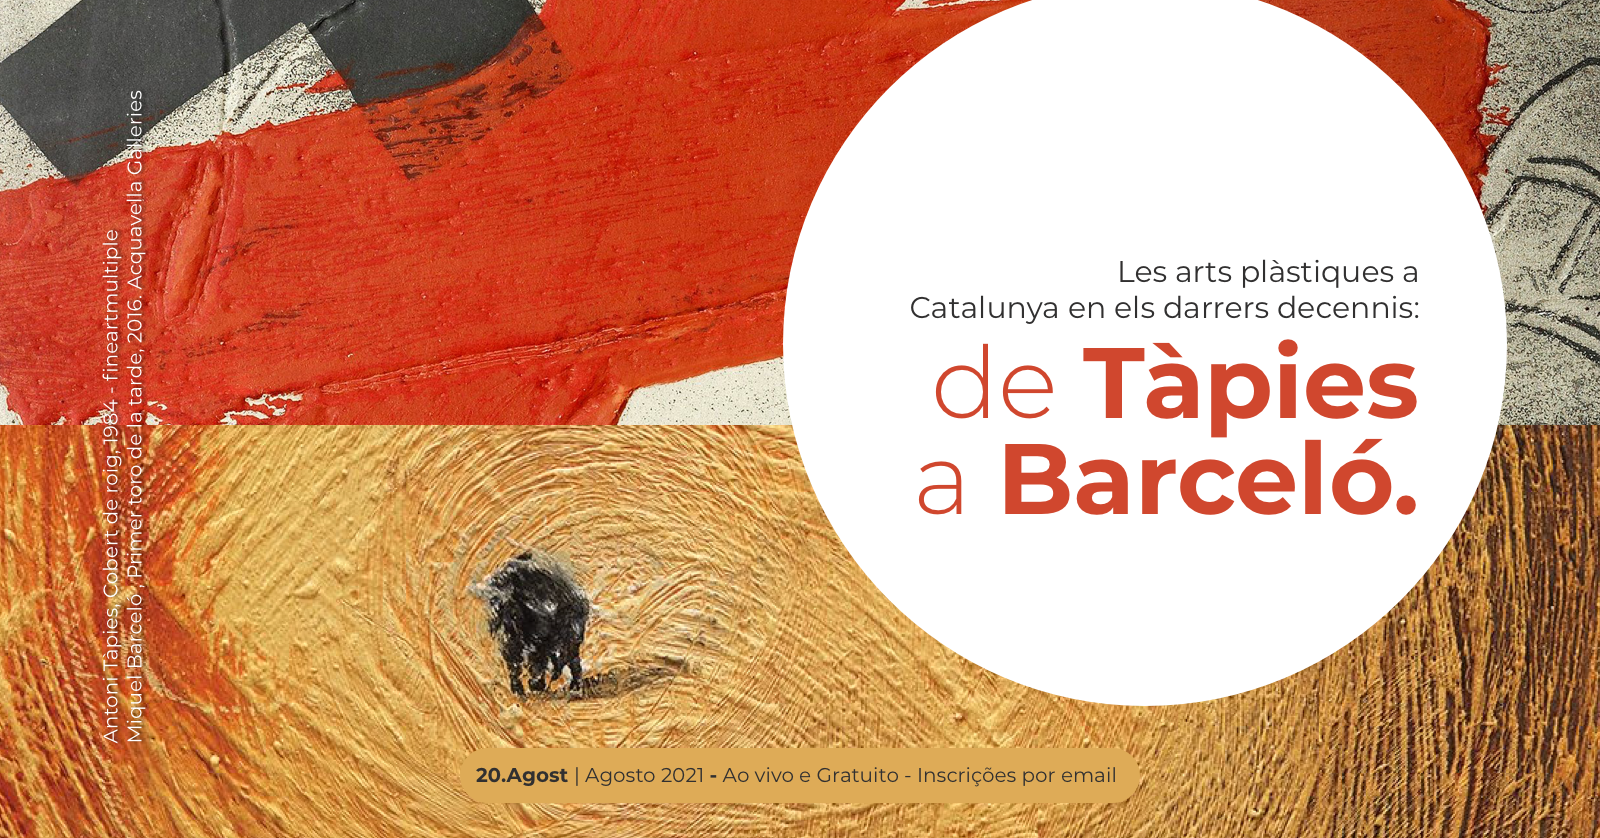 Palestra sobre as artes plásticas na Catalunha nas últimas décadas